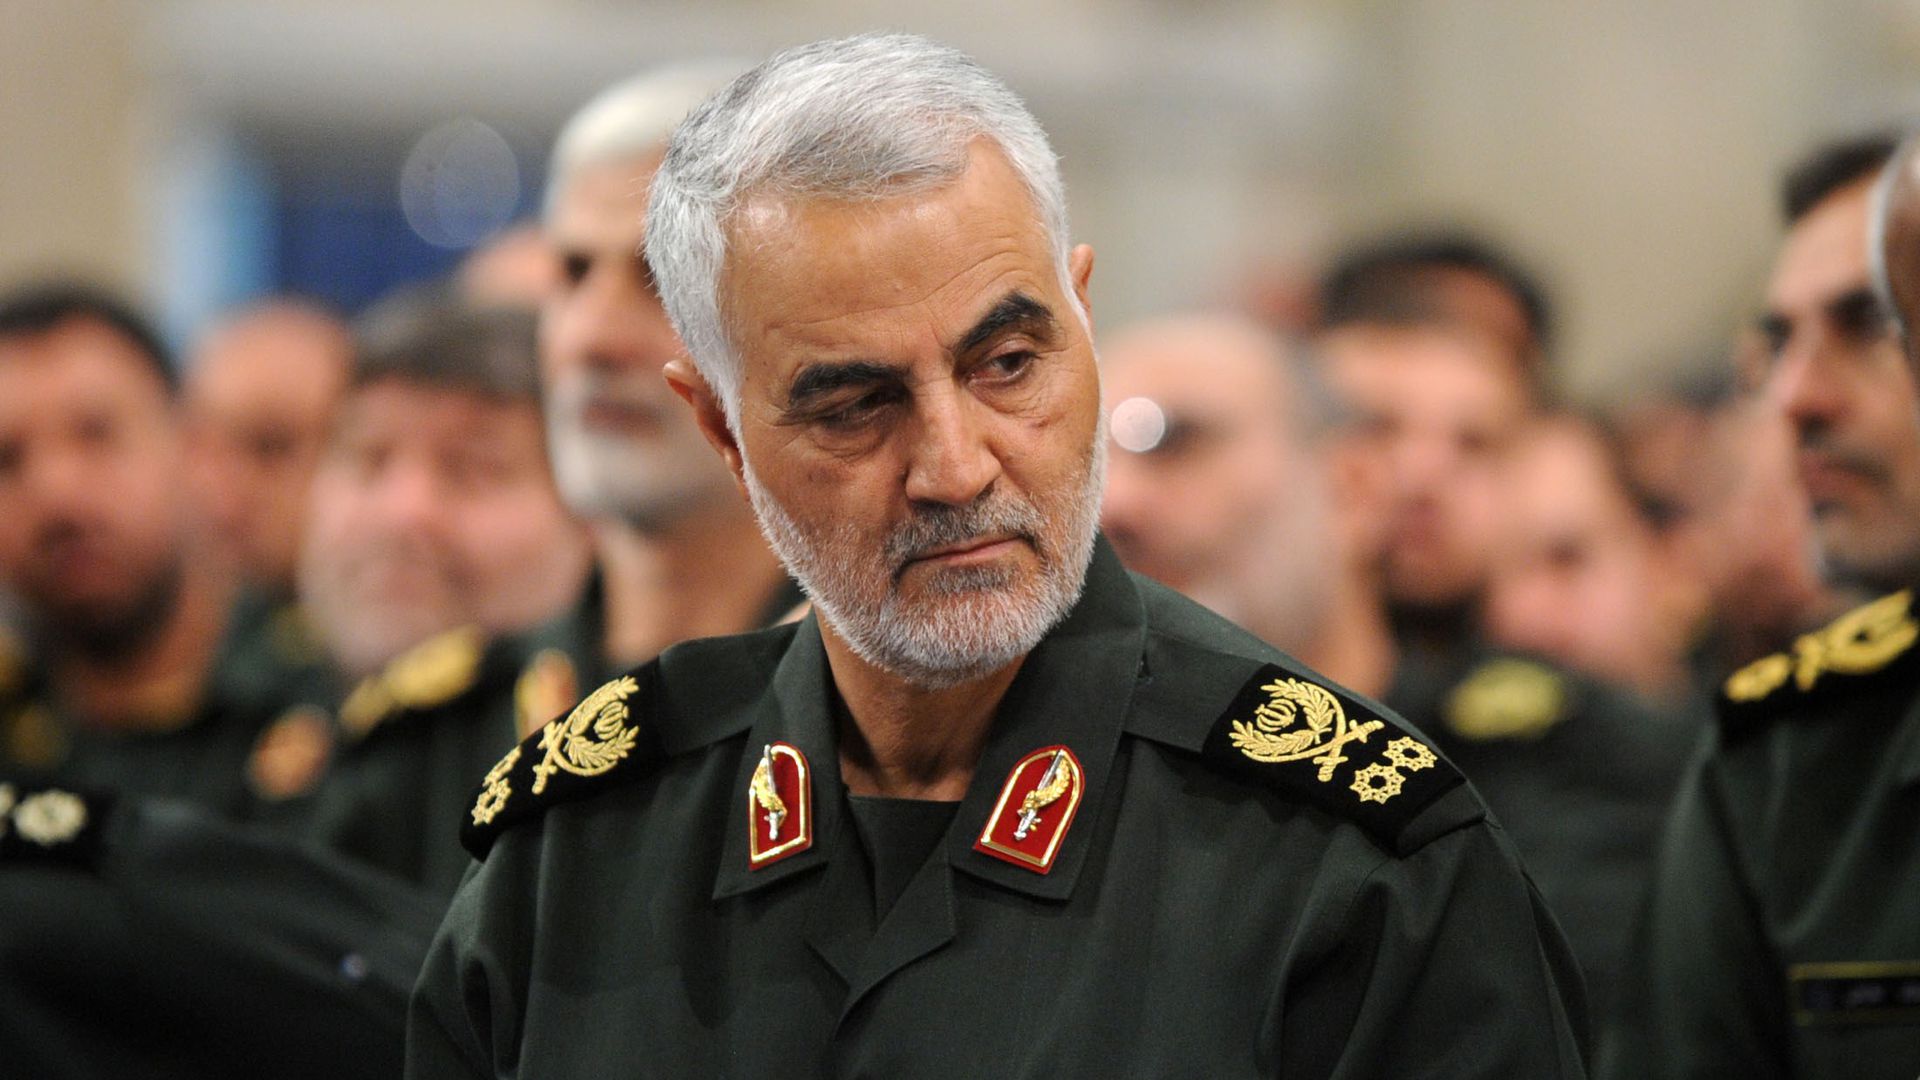 Tướng Qasem Soleimani, chỉ huy lực lượng Quds của Iran, bị quân đội Mỹ sát hại tại Iraq